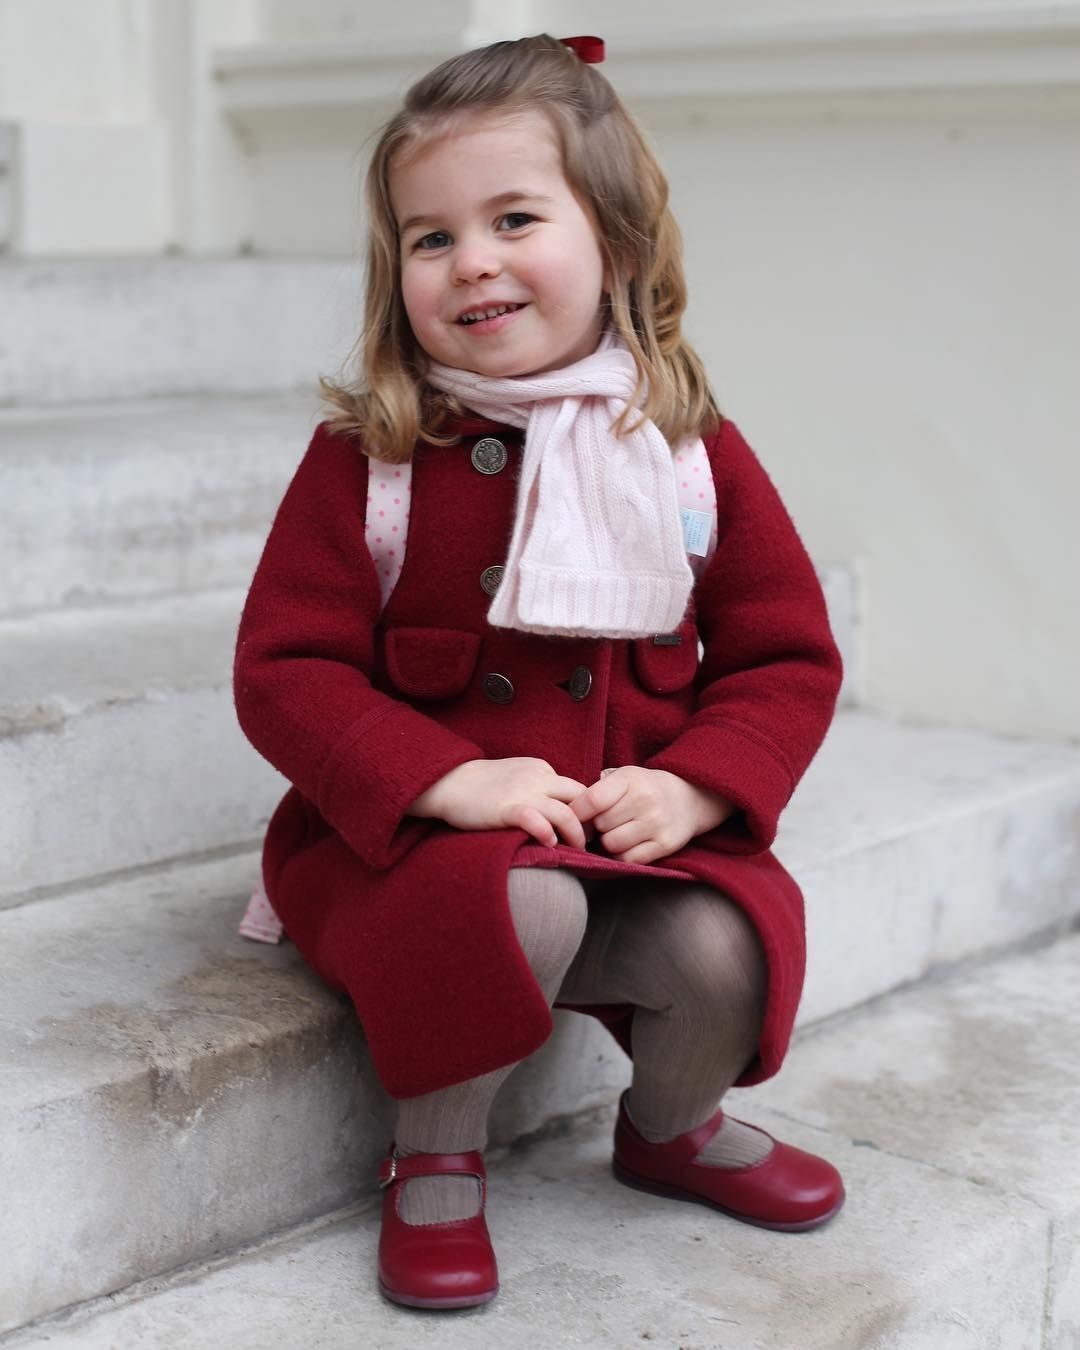 10 милых фото королевской семьи, которые сделала Кейт Миддлтон: от них веет теплом и нежностью